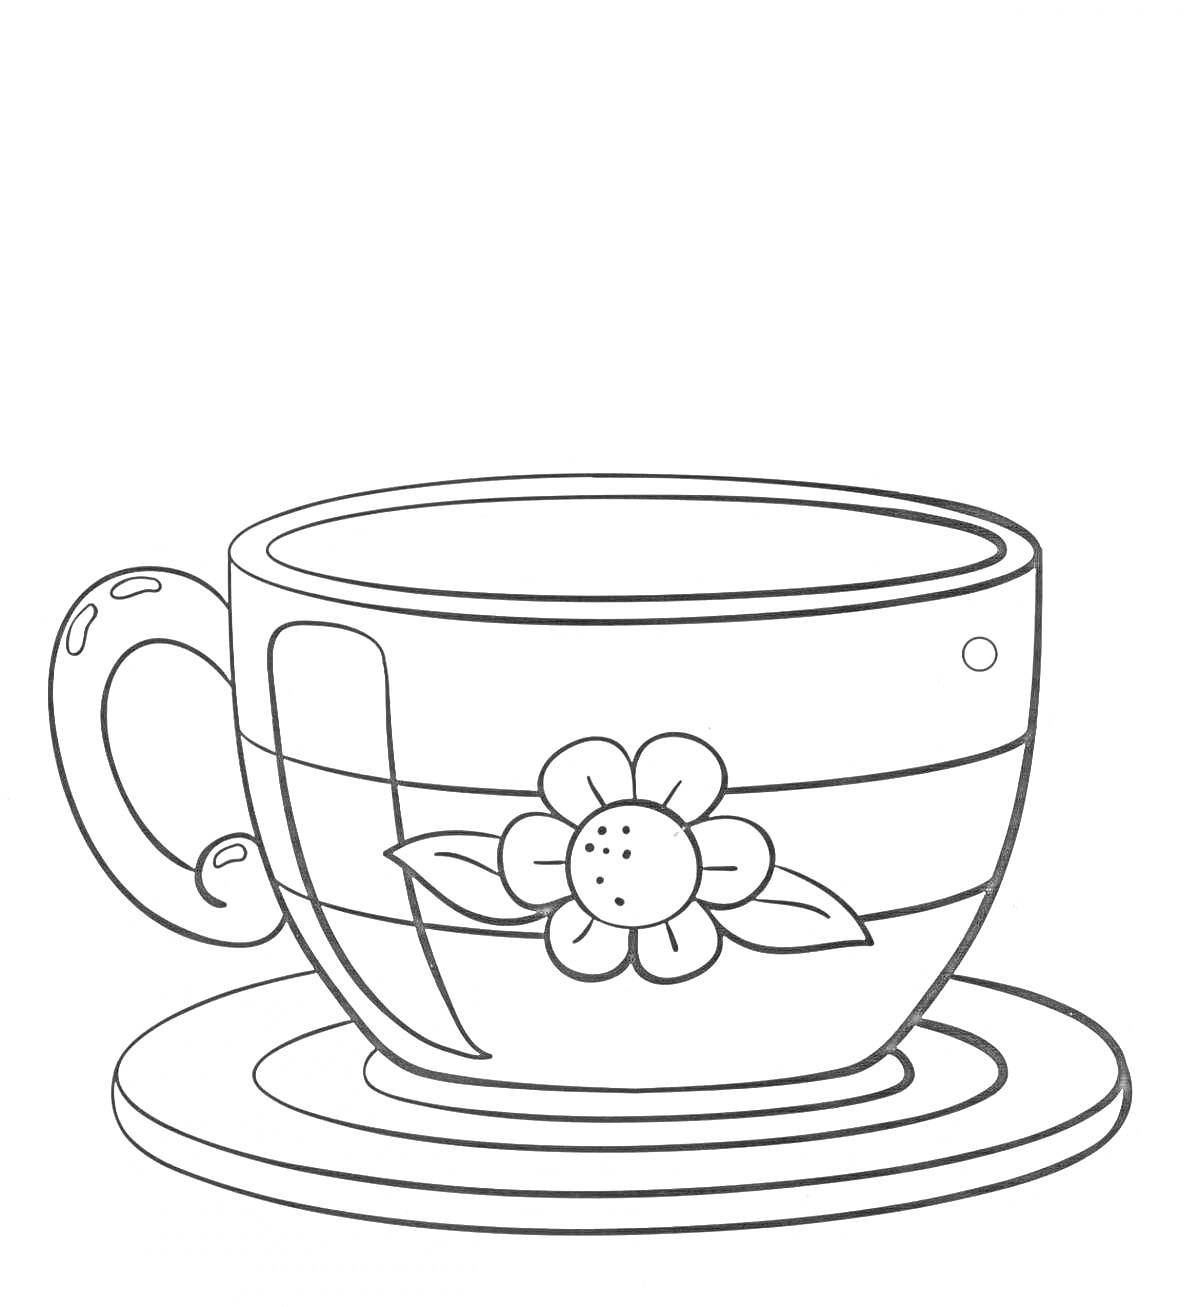 чашка с блюдцем и цветком